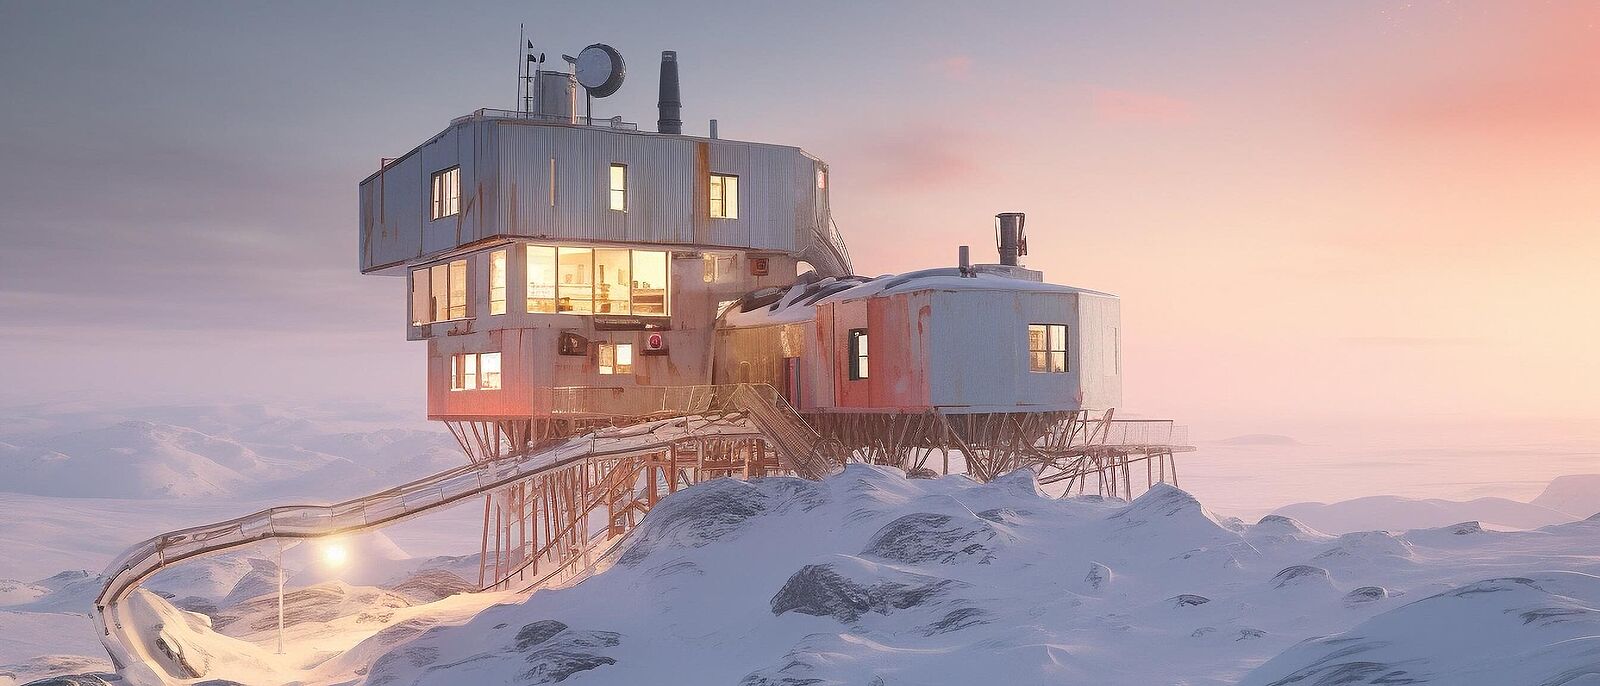 Arktische/Antarktische Forschungsstation in einer eisbedeckten Landschaft (Generiert mit KI).